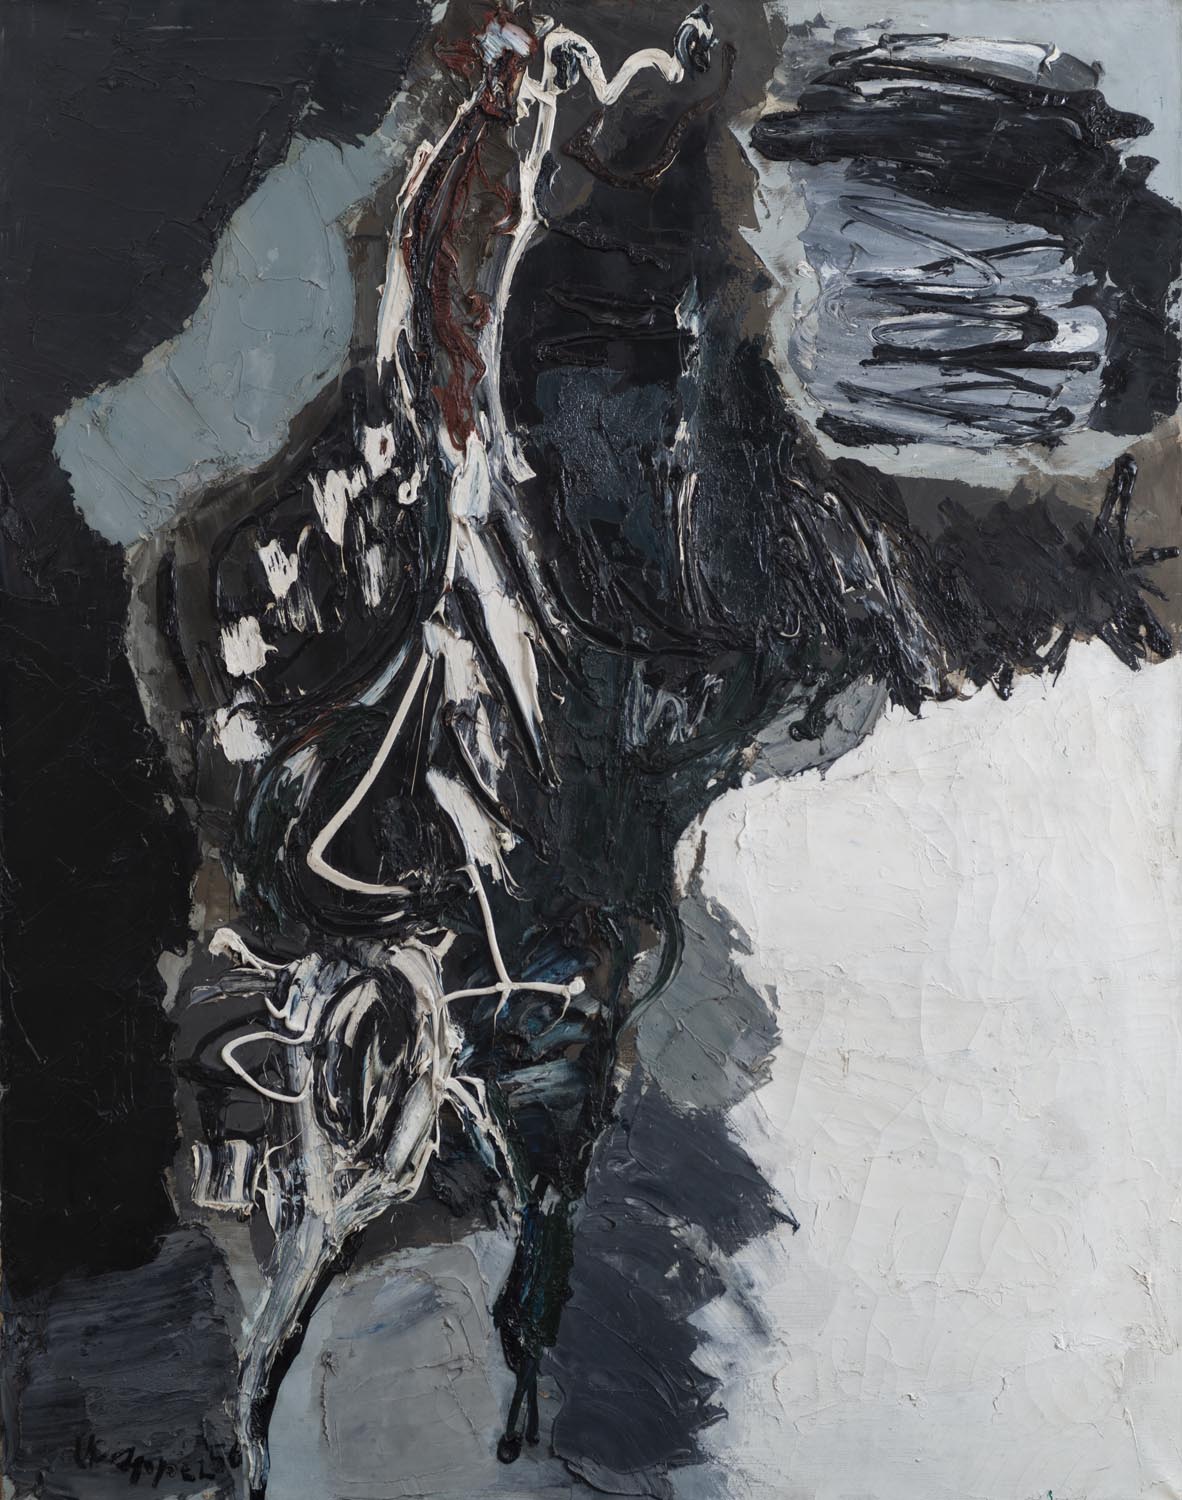 Karel Appel - Nu Tragique - oil on canvas - 1956 - 146 x 116 cm s